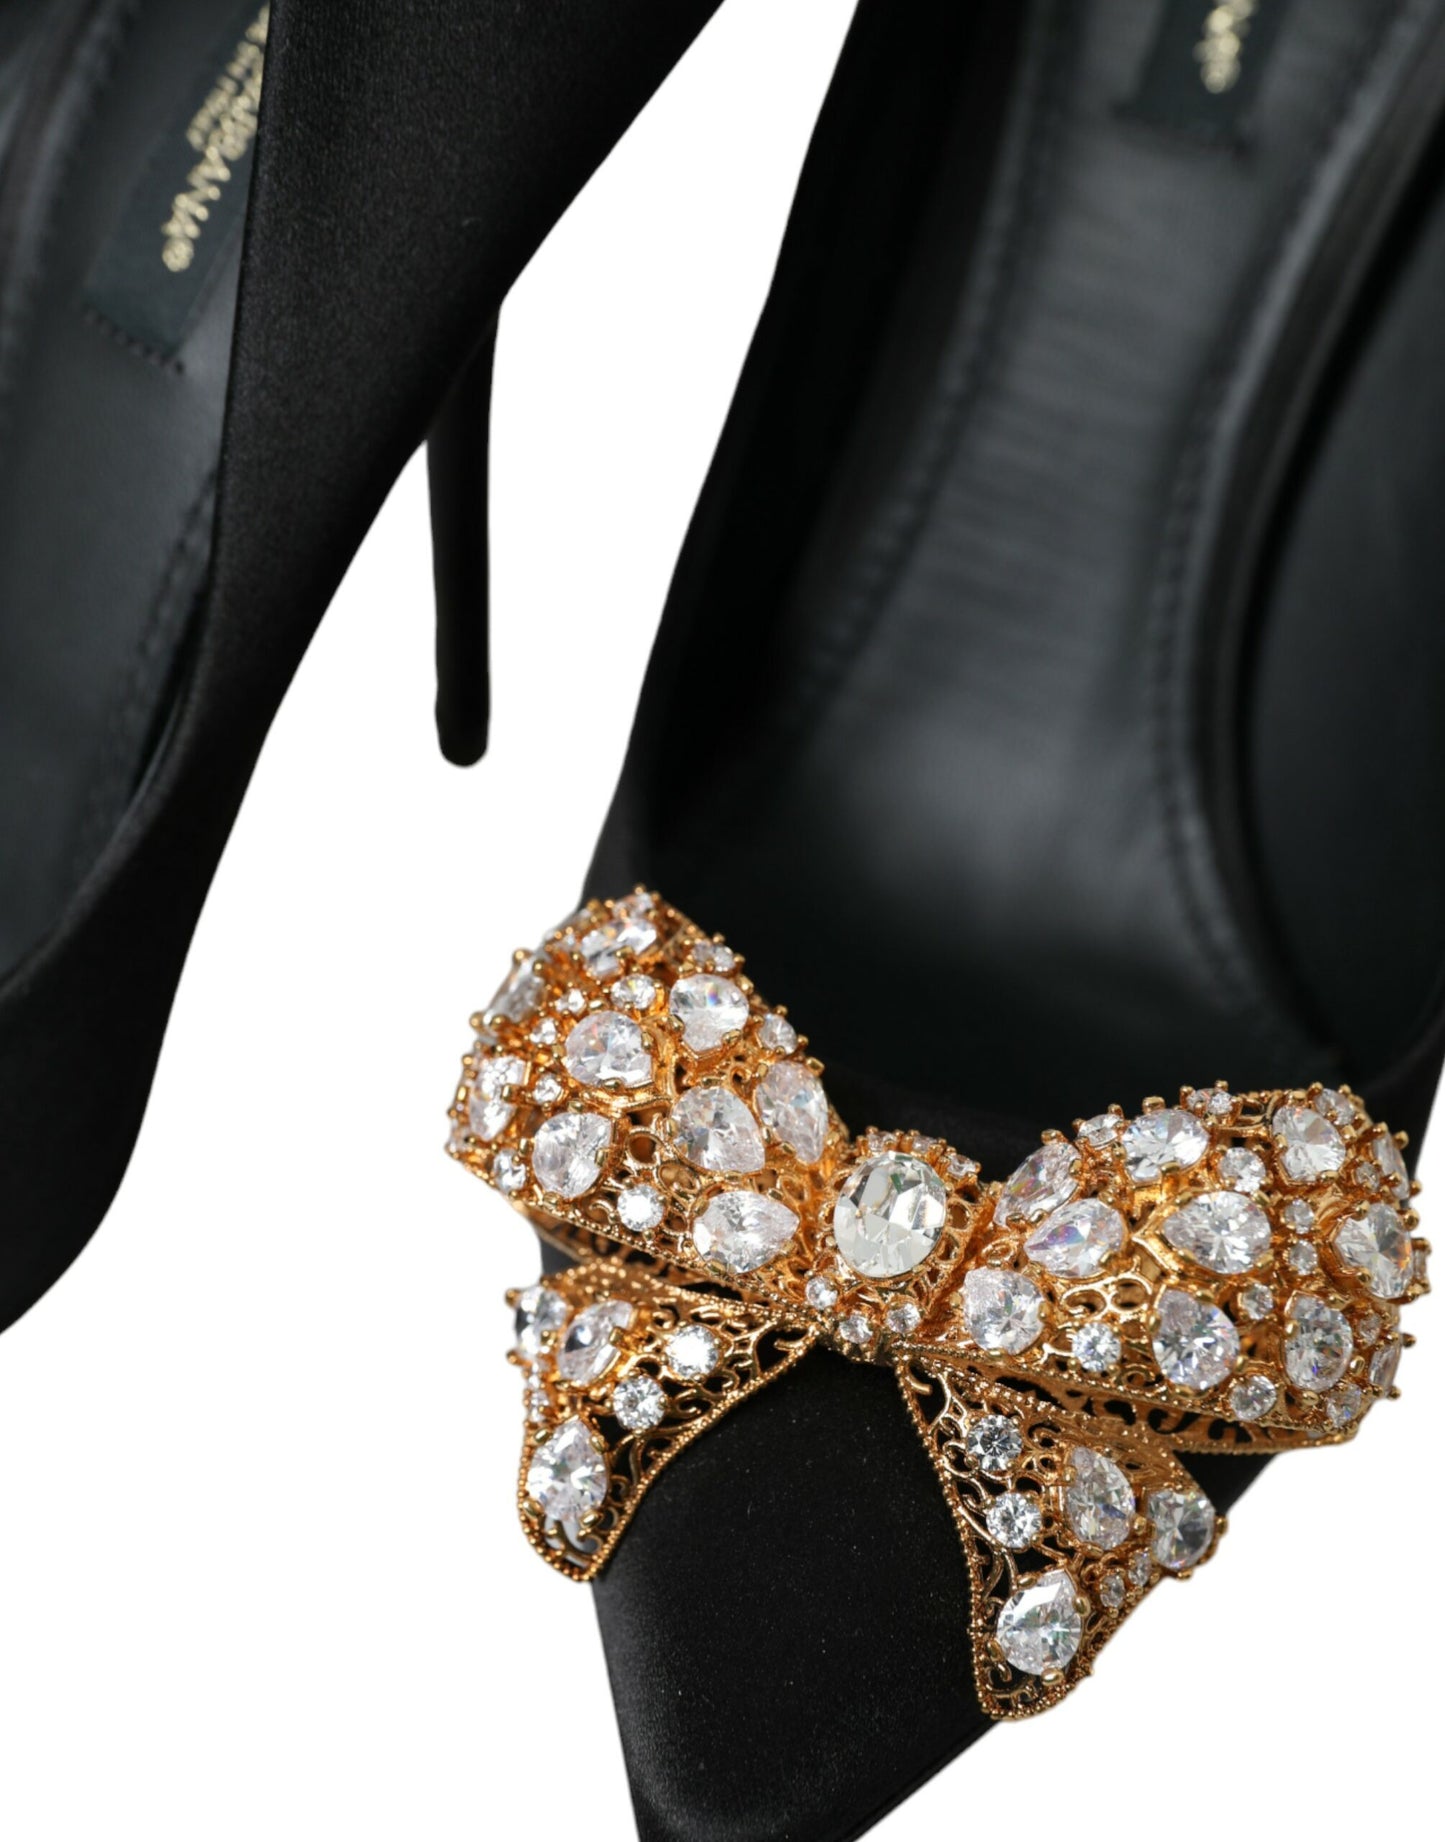 Black Satin Bow Embellished Heels Pumps Shoes